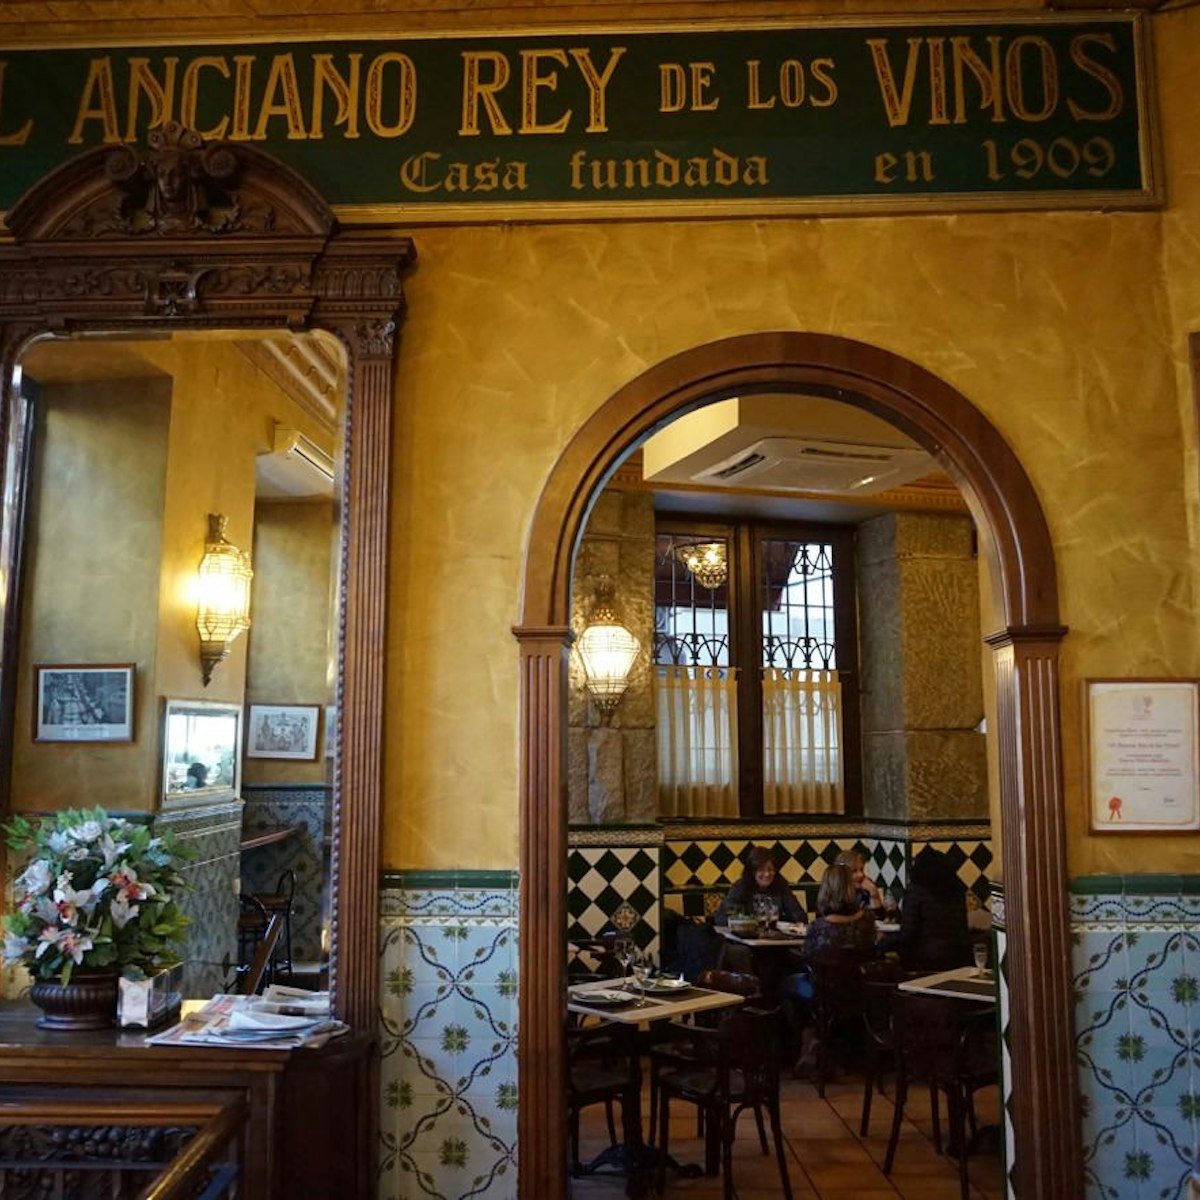 Interior of El Anciano Rey de los Vinos.